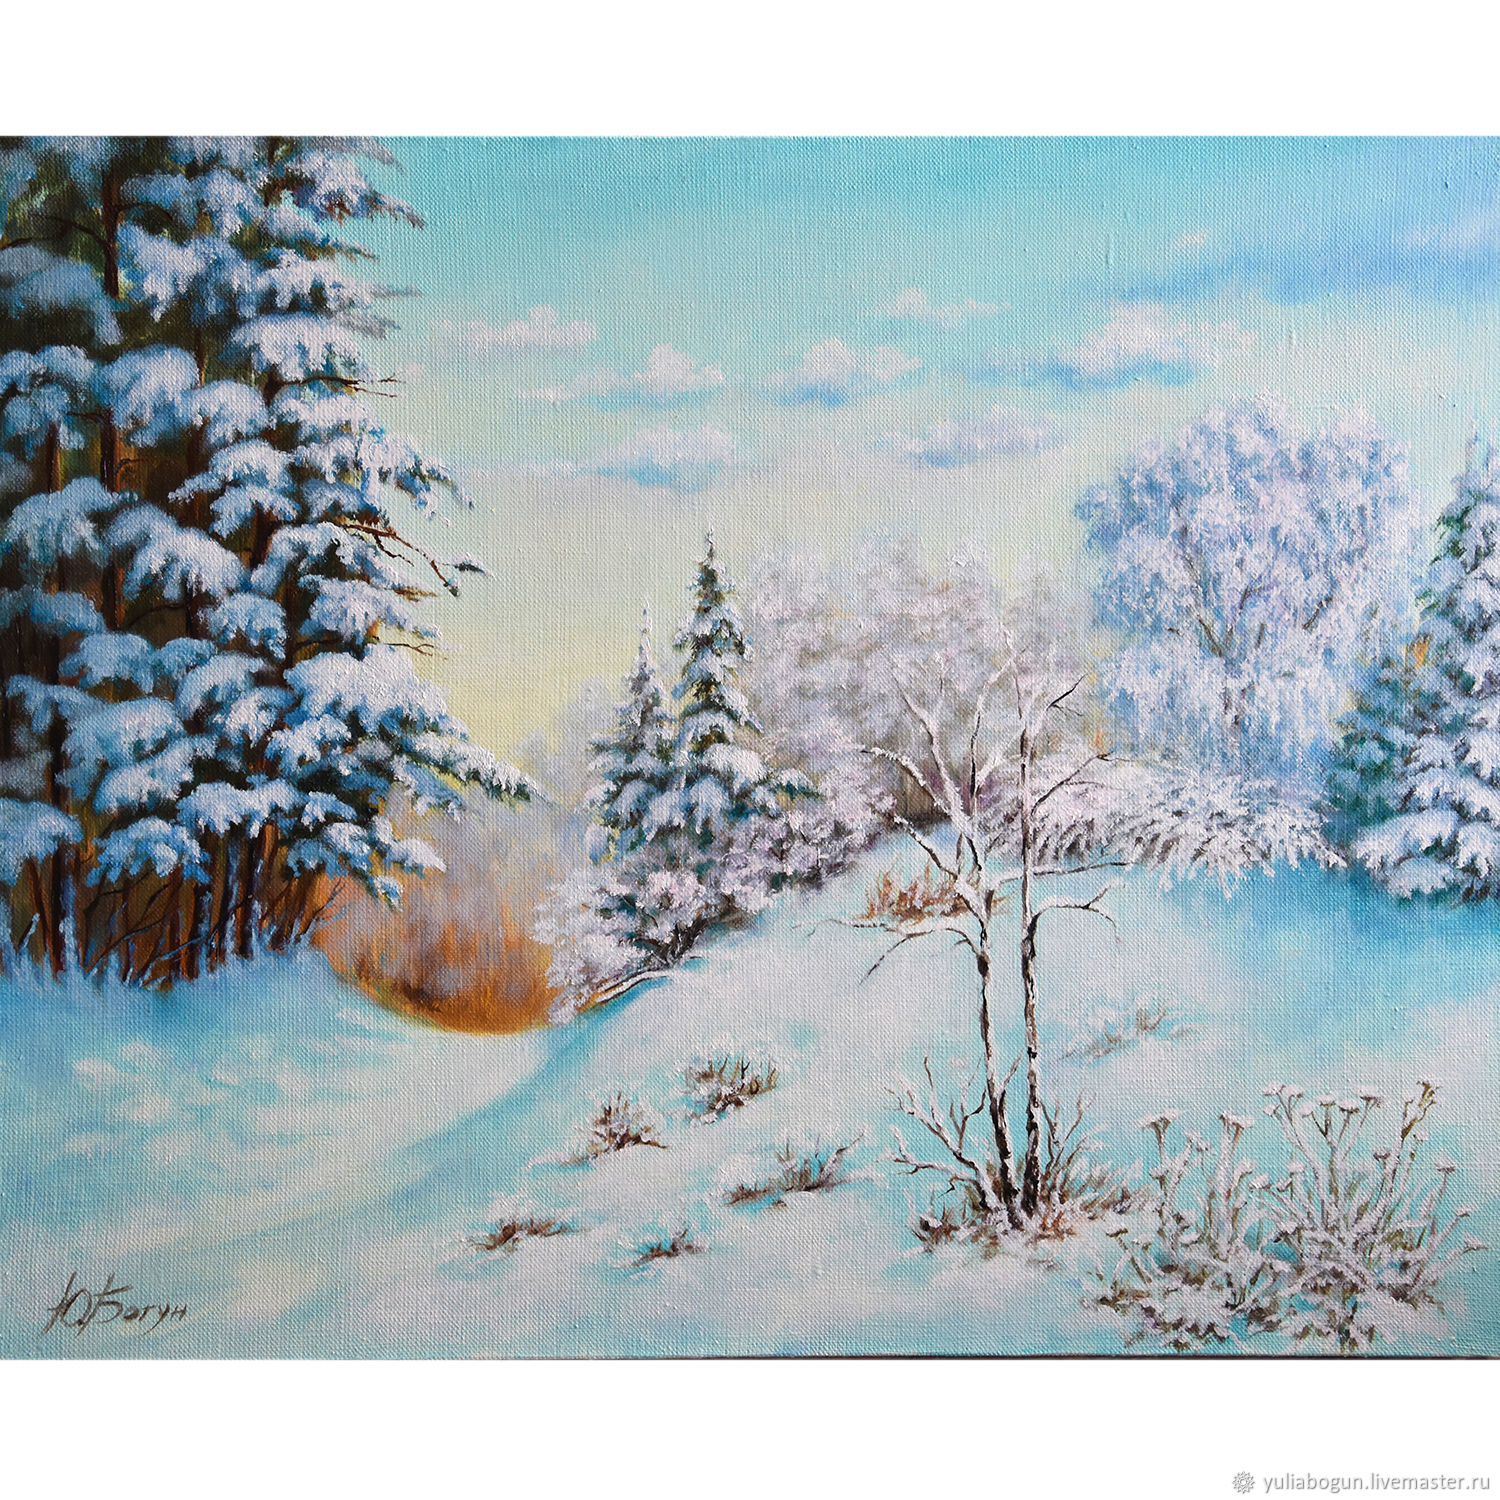 Картины Зимы Фото